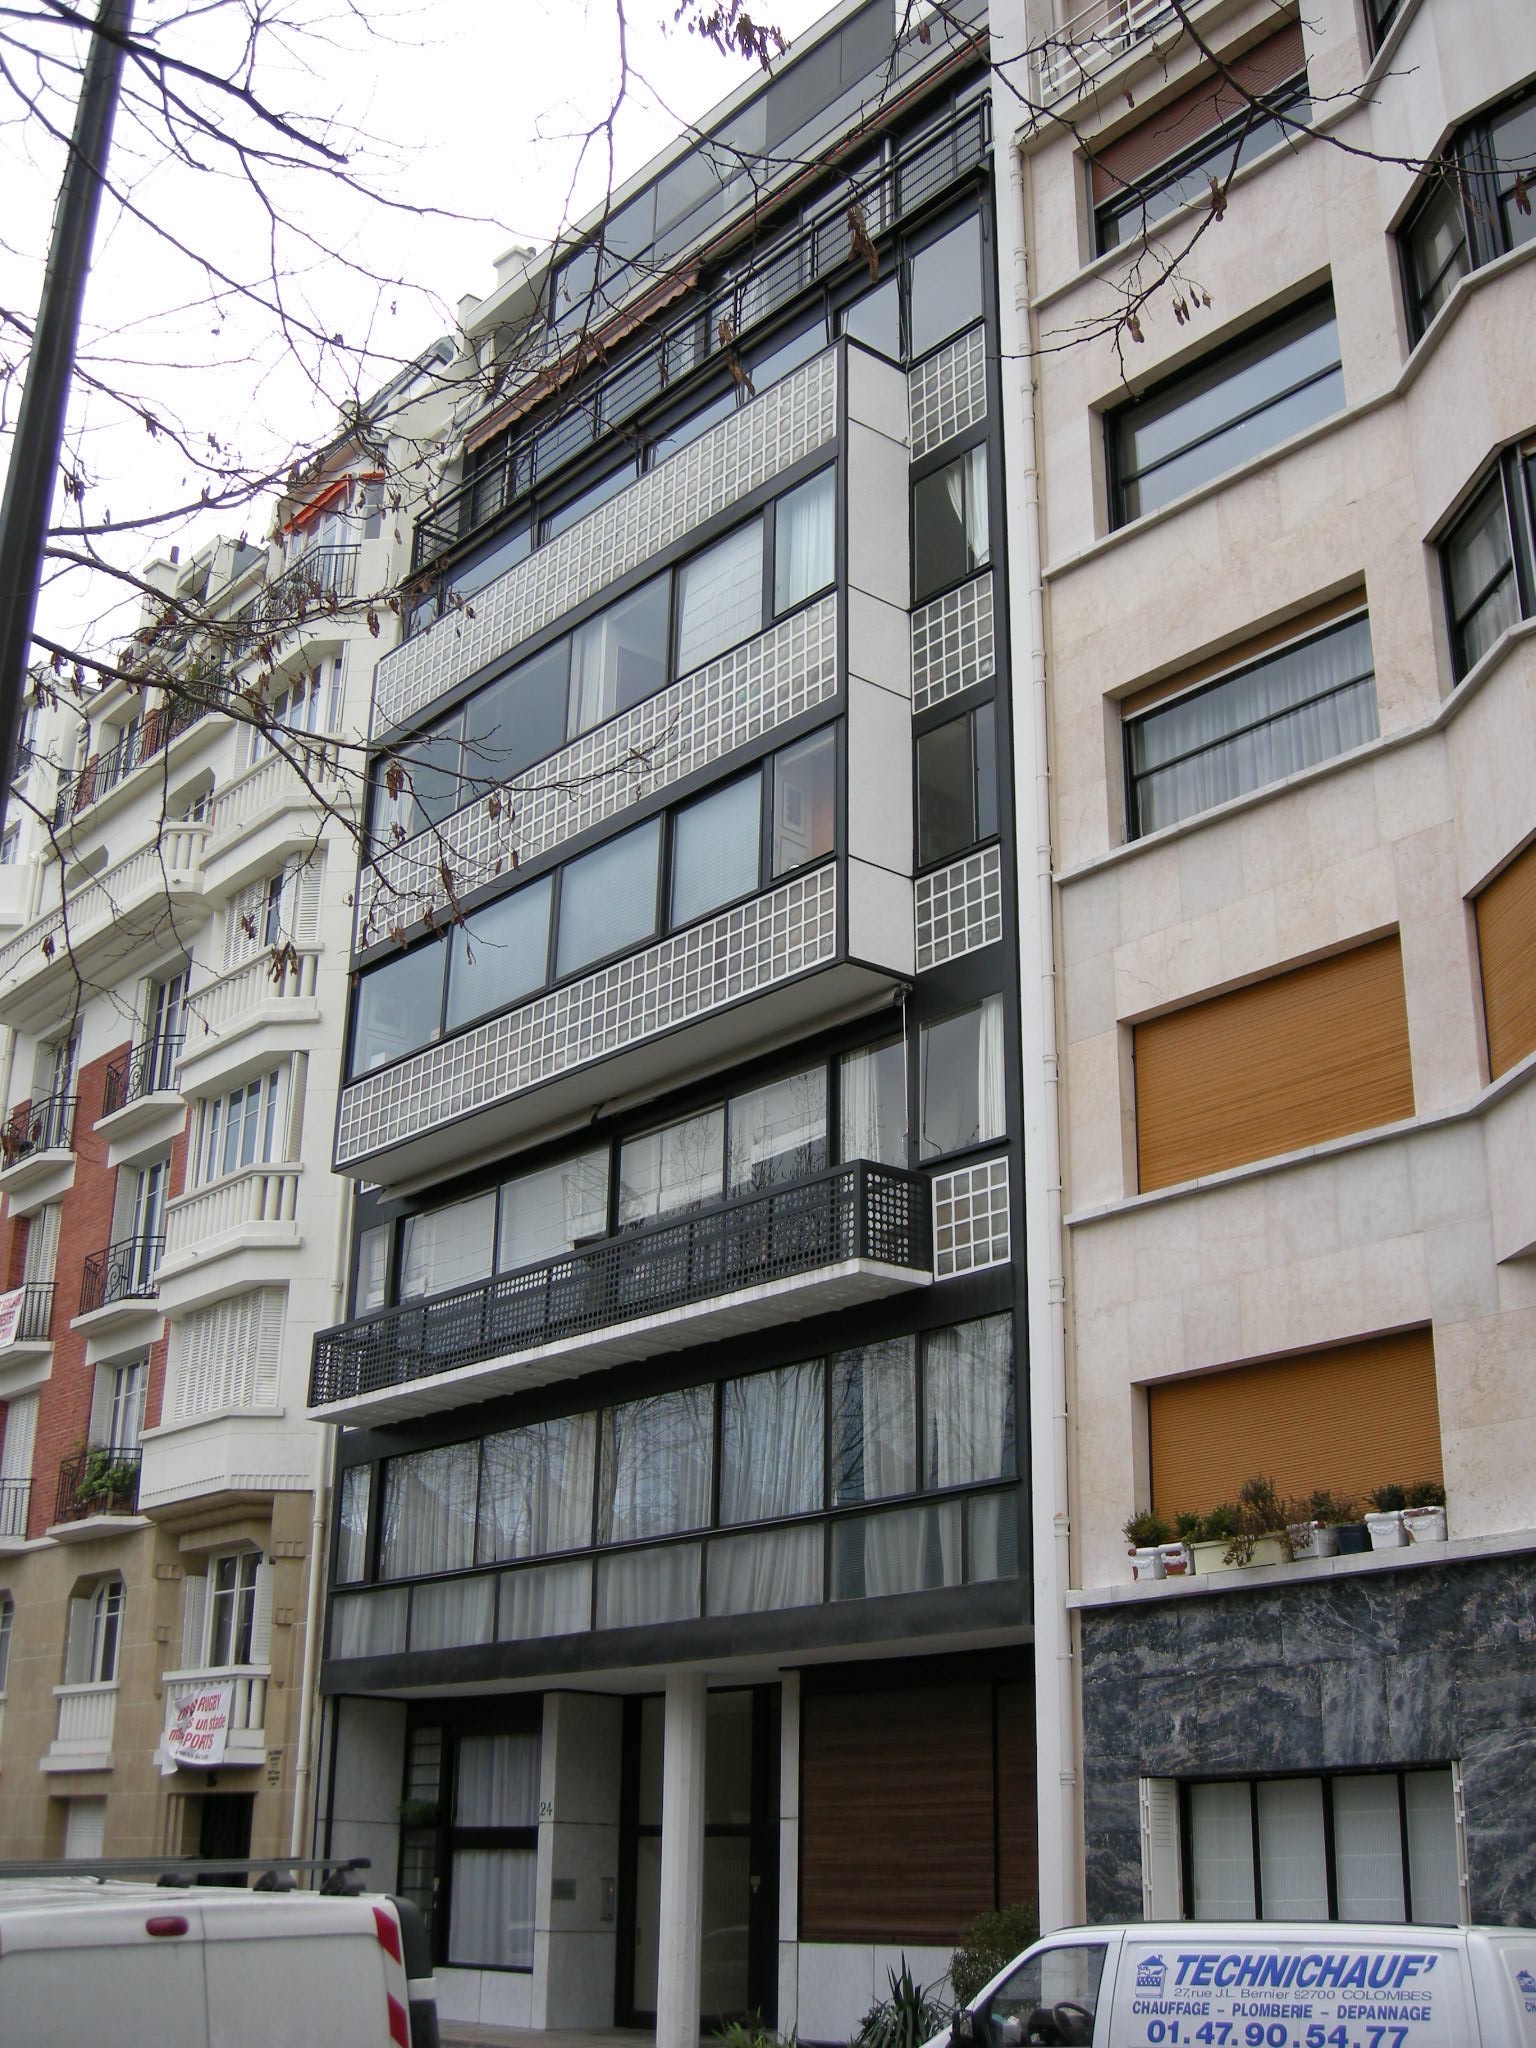 Blick auf eine Häuserzeile mit drei Häusern, wovon das mittlere viele Glasbausteine enthält.